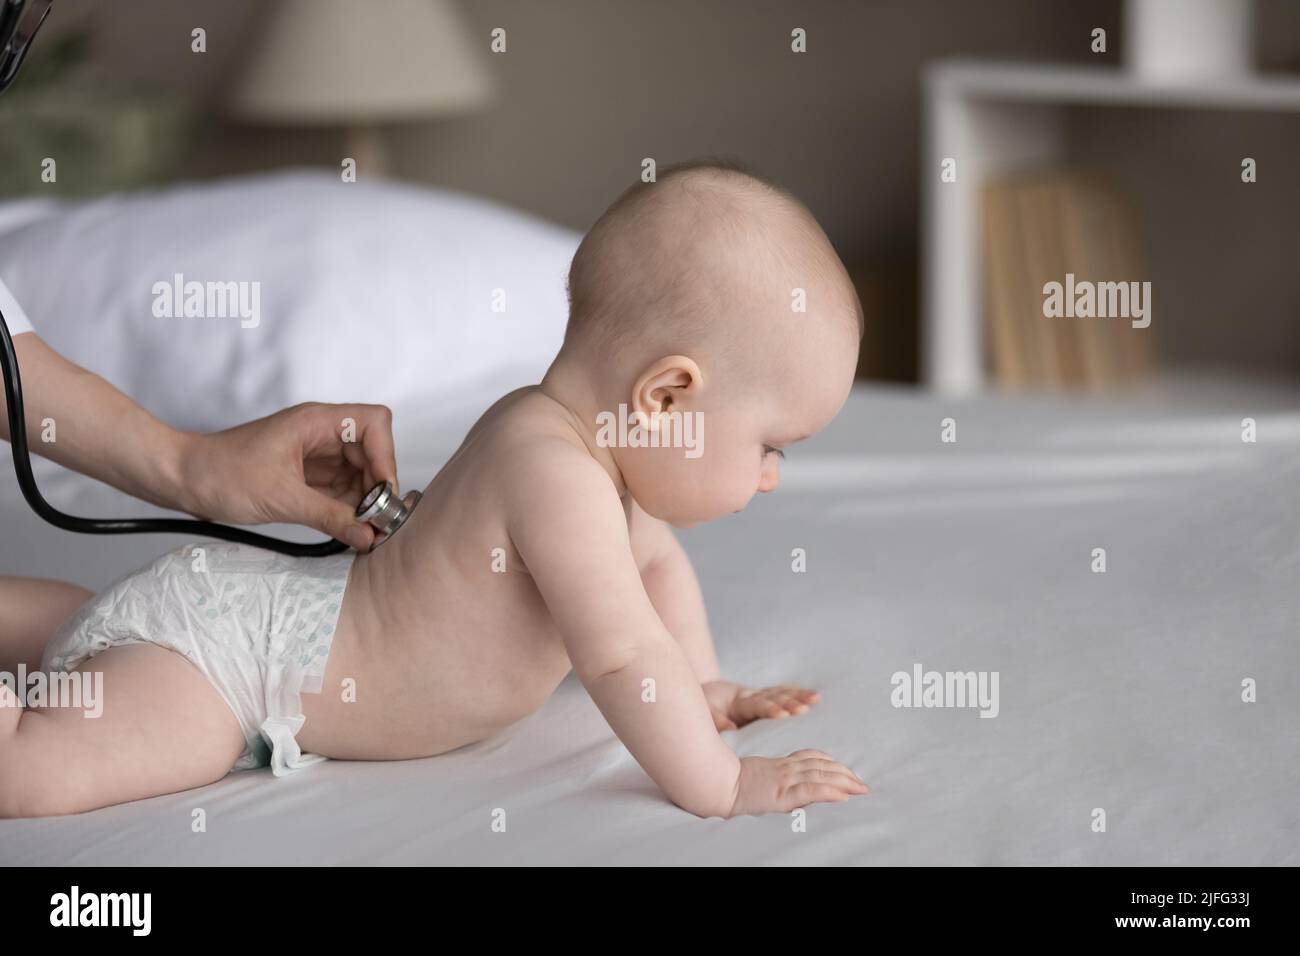 El estetoscopio del uso del pediatra que examina la salud del bebé lindo en pañal Foto de stock